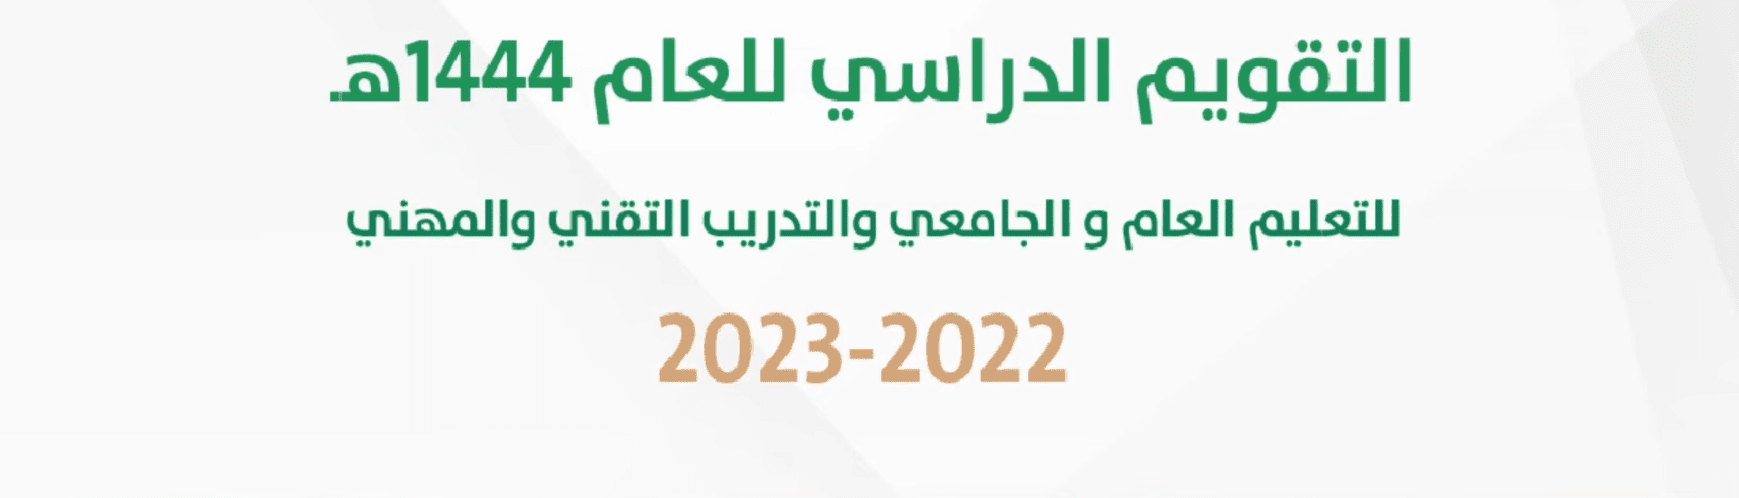 النظام الدراسي السعودي الجديد 1444